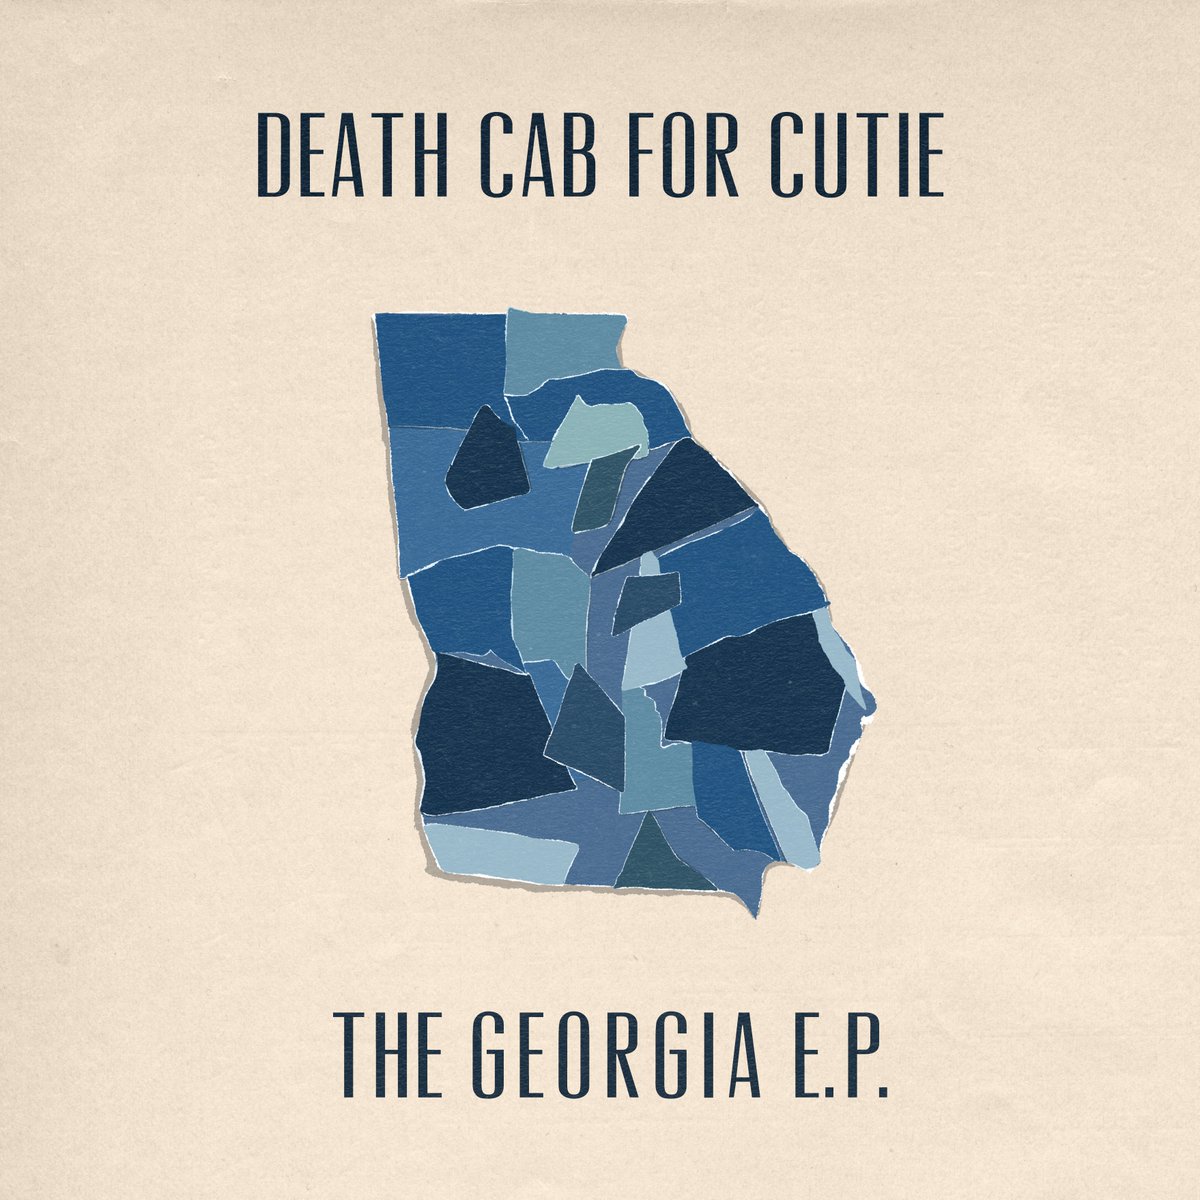 Capa de The Georgia EP. É uma capa bege claro, com o mapa do estado da Georgia, nos Estados Unidos, destacado em azul. Ao topo, em letras pretas, vemos escrito: Death Cab for Cutie, e abaixo The Georgia EP.